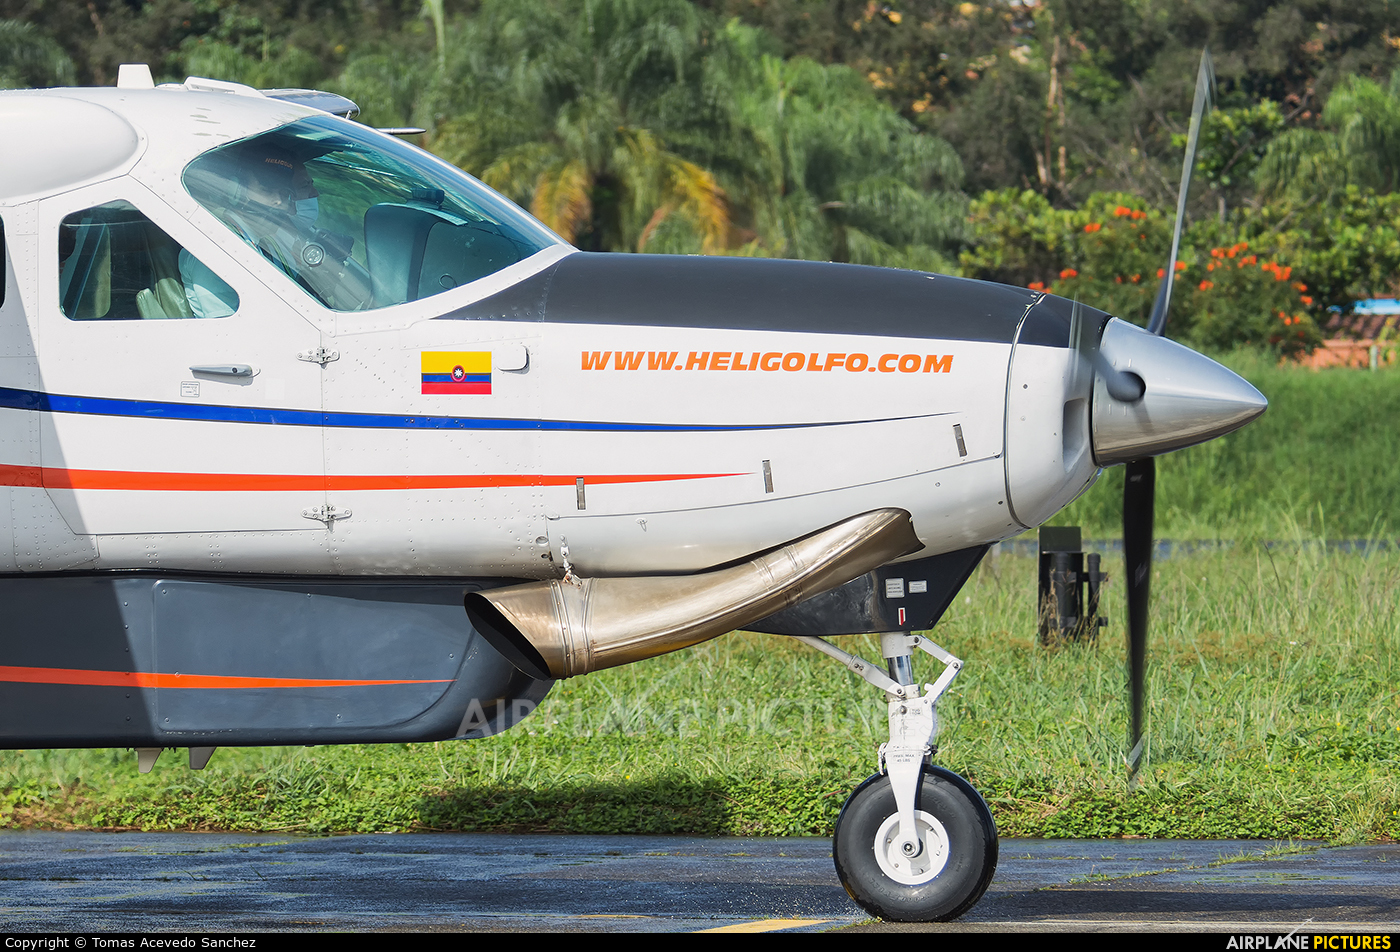  HK-4910 aircraft at Medellin - Olaya Herrera